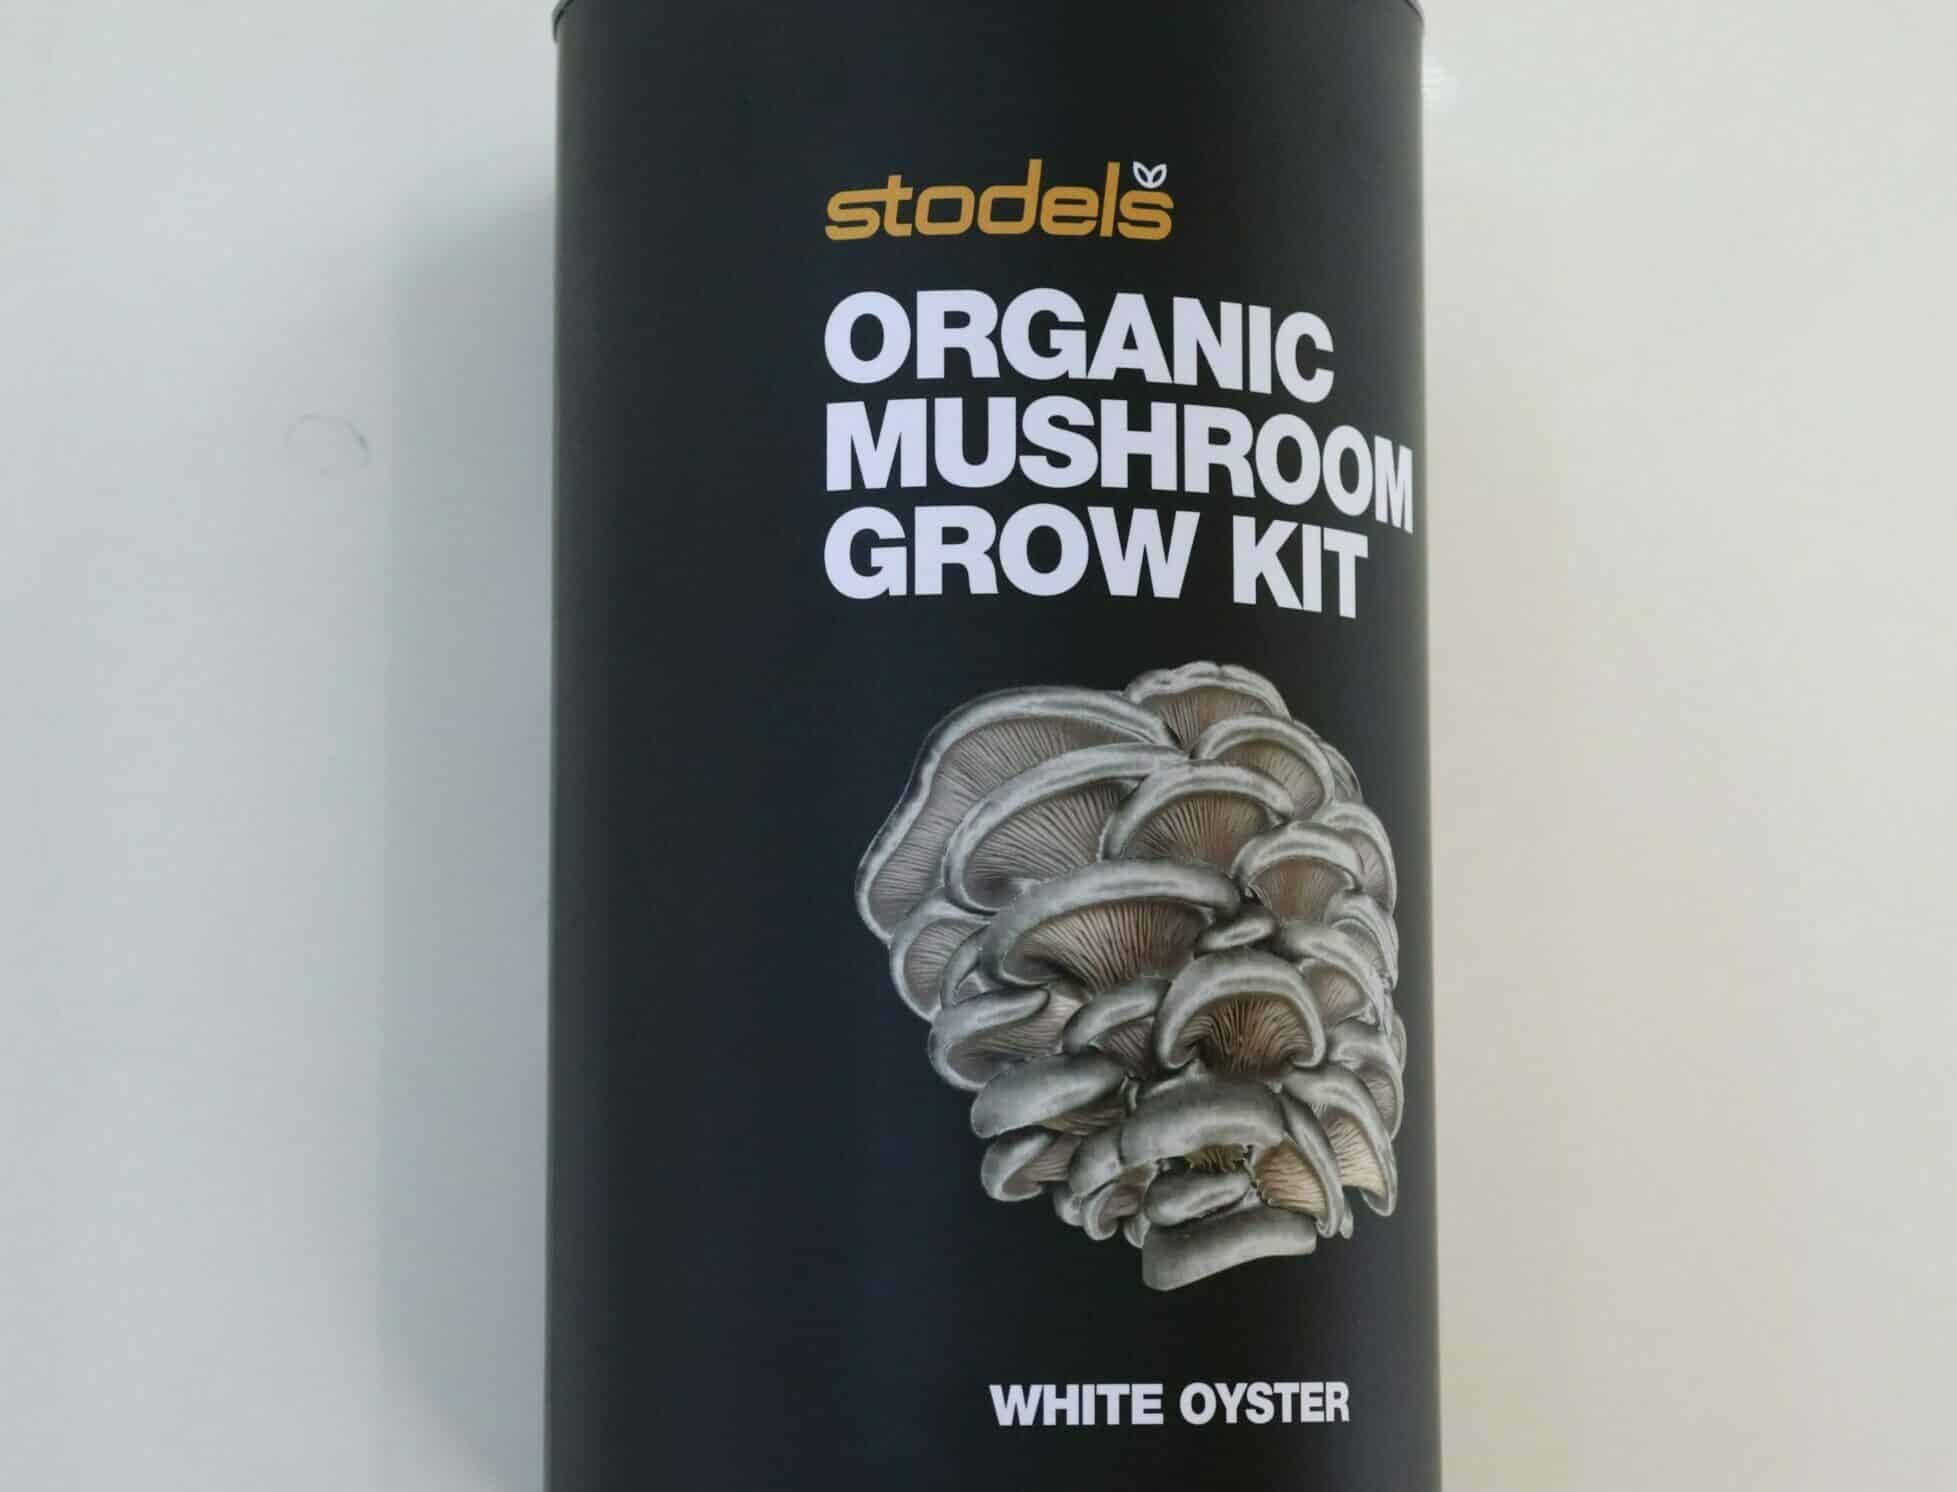 Stodels organic mushroom grow kit for white oyster in a black tube